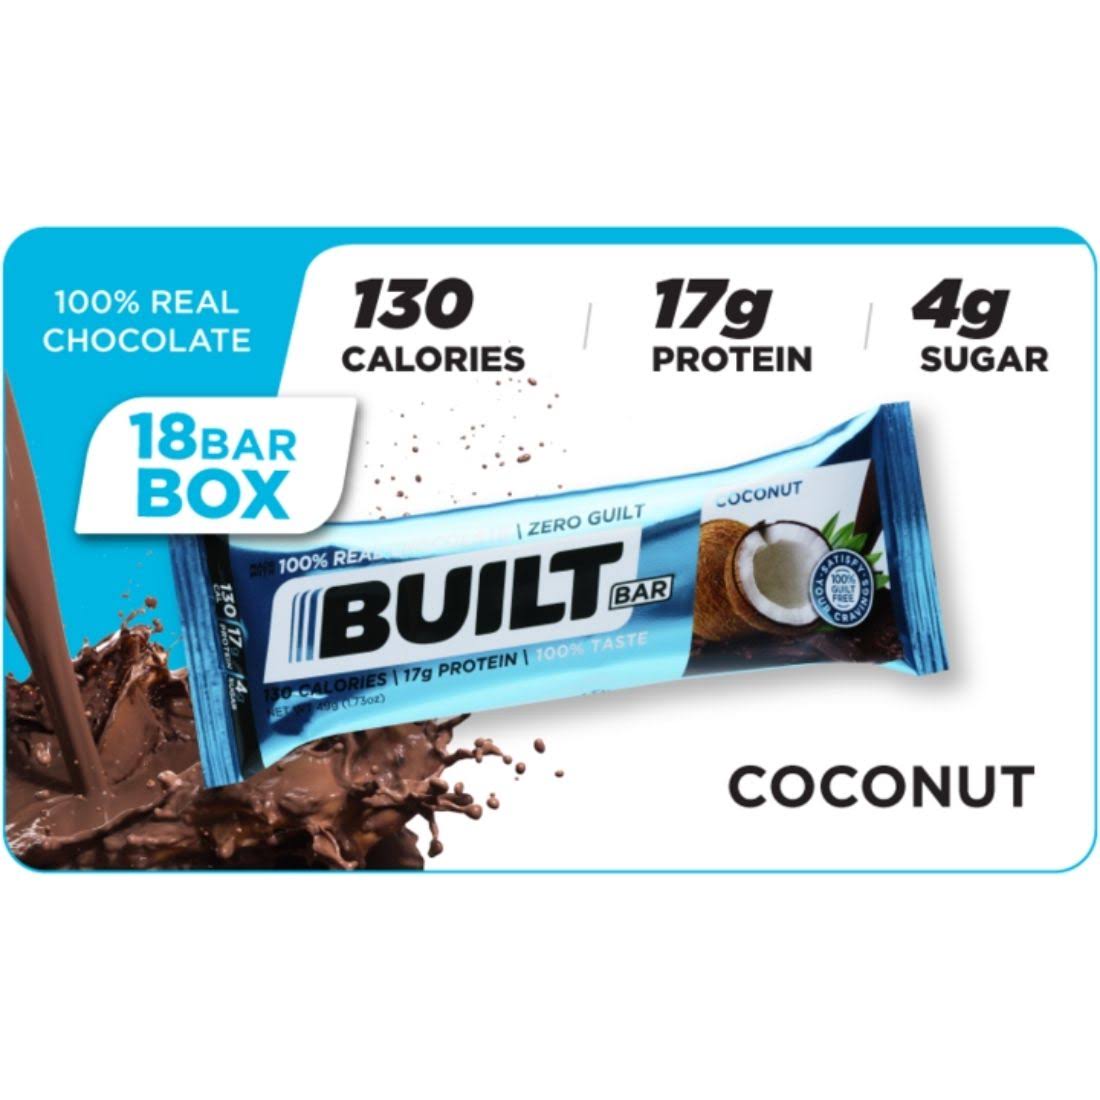 Built Bar (Protein and Energy Bar)